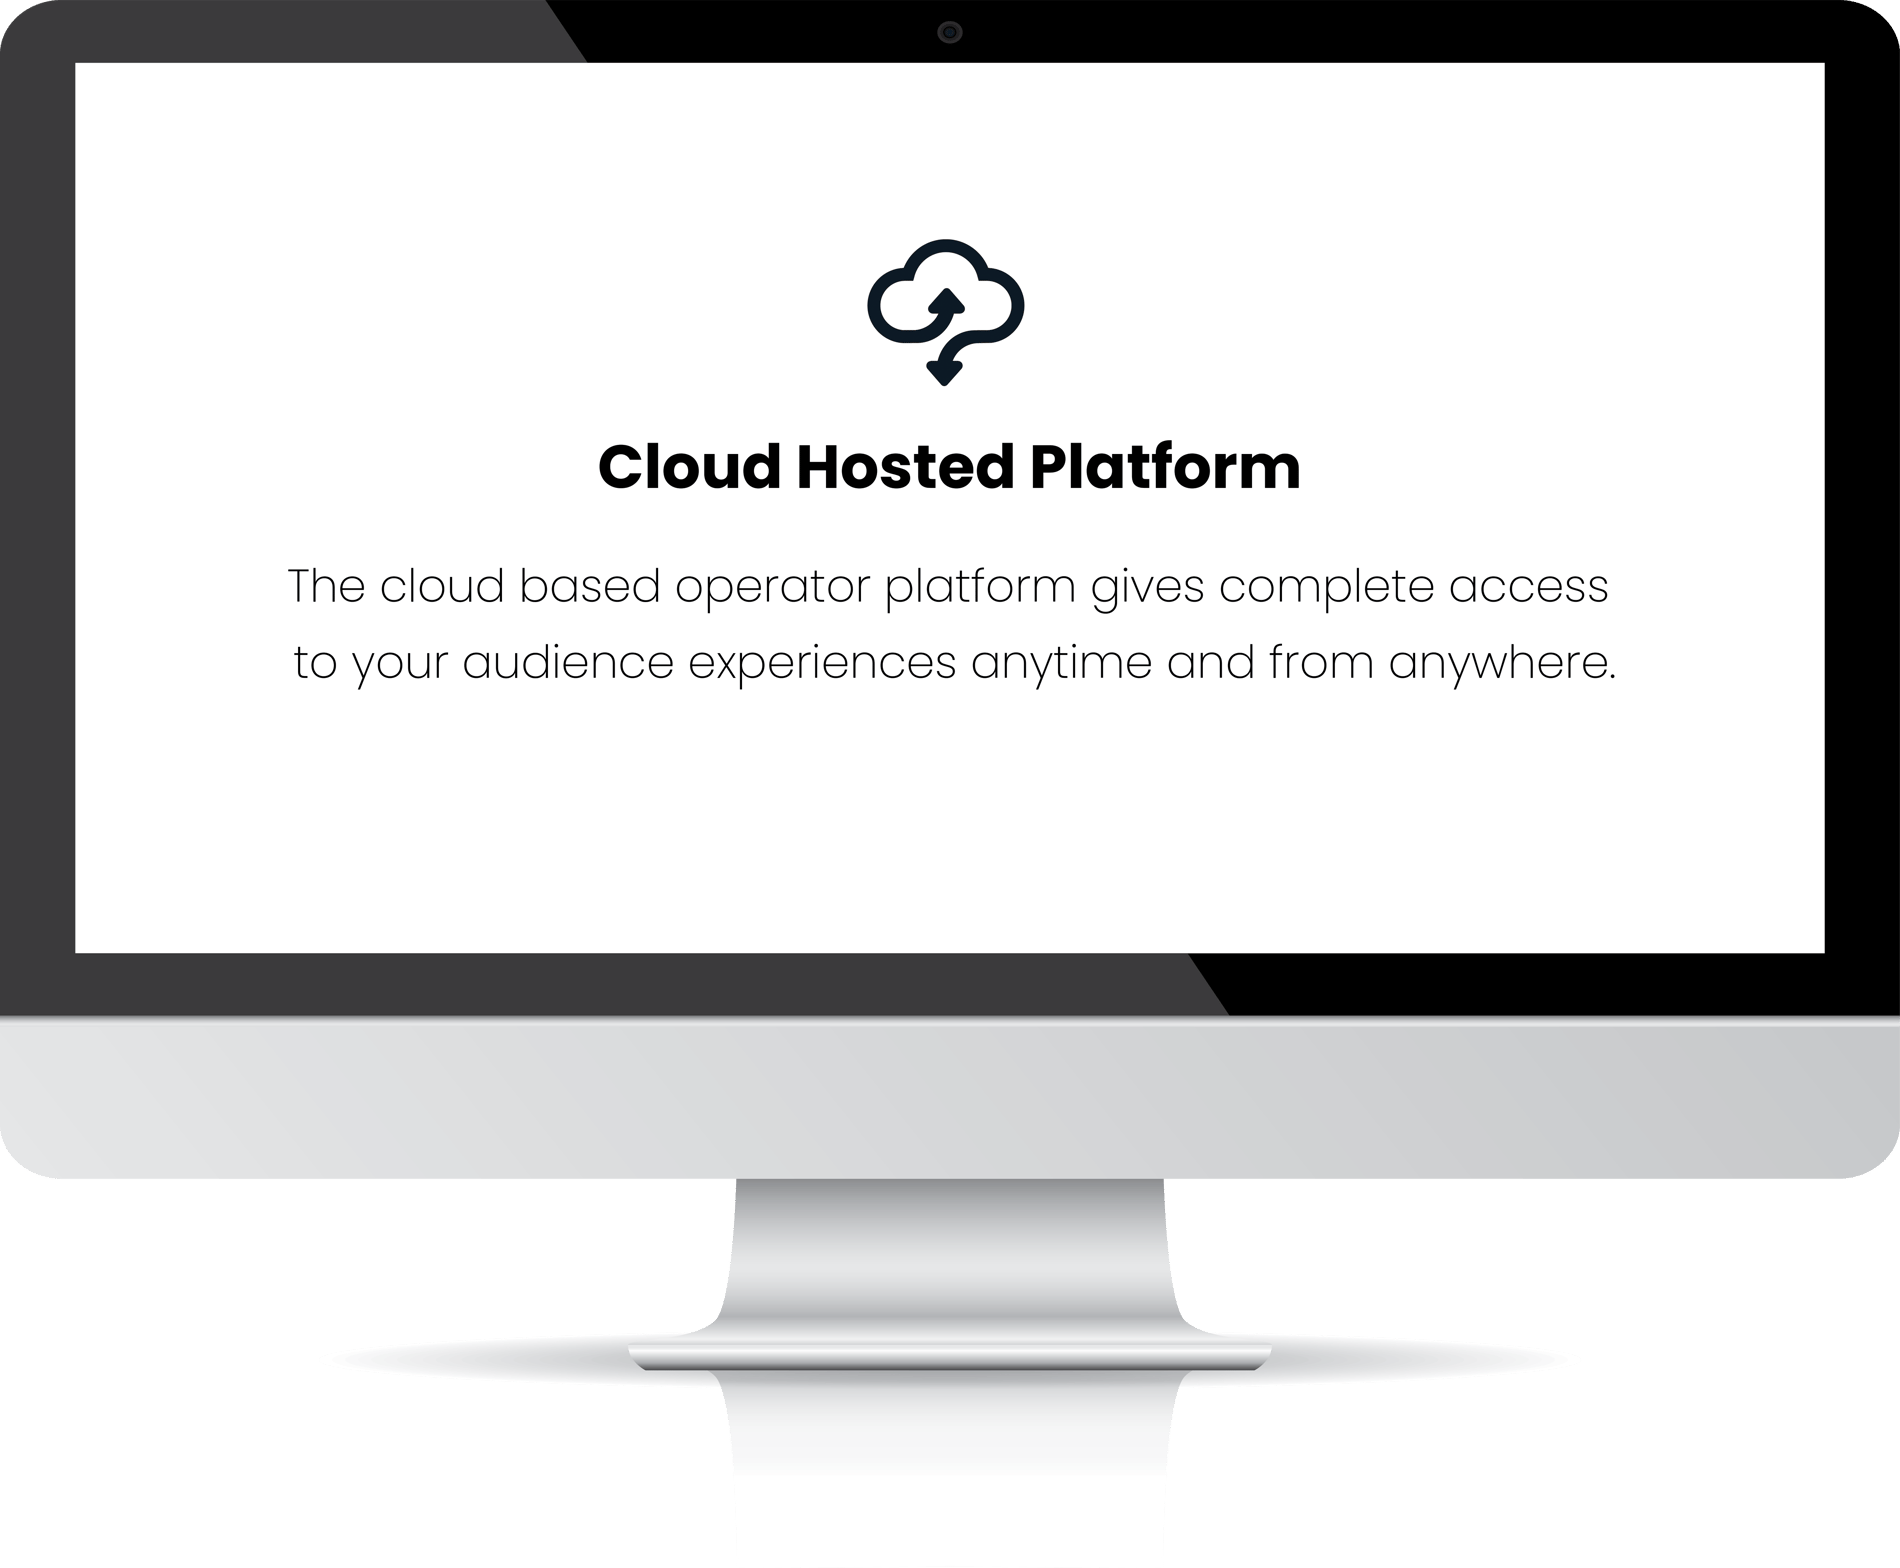 Cloud Hosted Platform